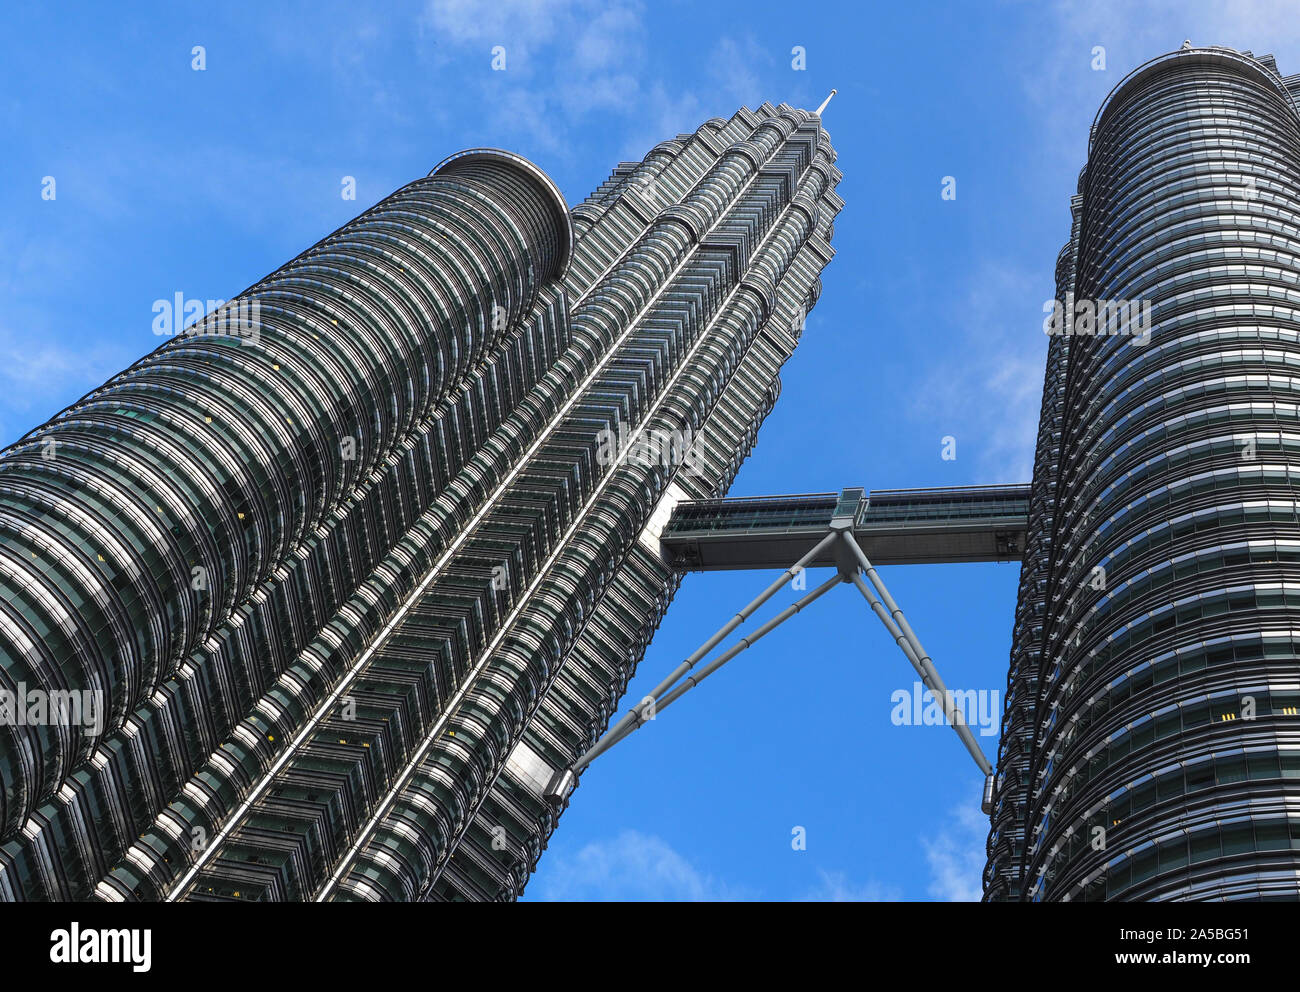 Petronas Twin Towers Sky Bridge, The Sky Bridge on the 42nd floor of the Petronas Twin Towers, Kuala Lumpur, Malaysia Stock Photo